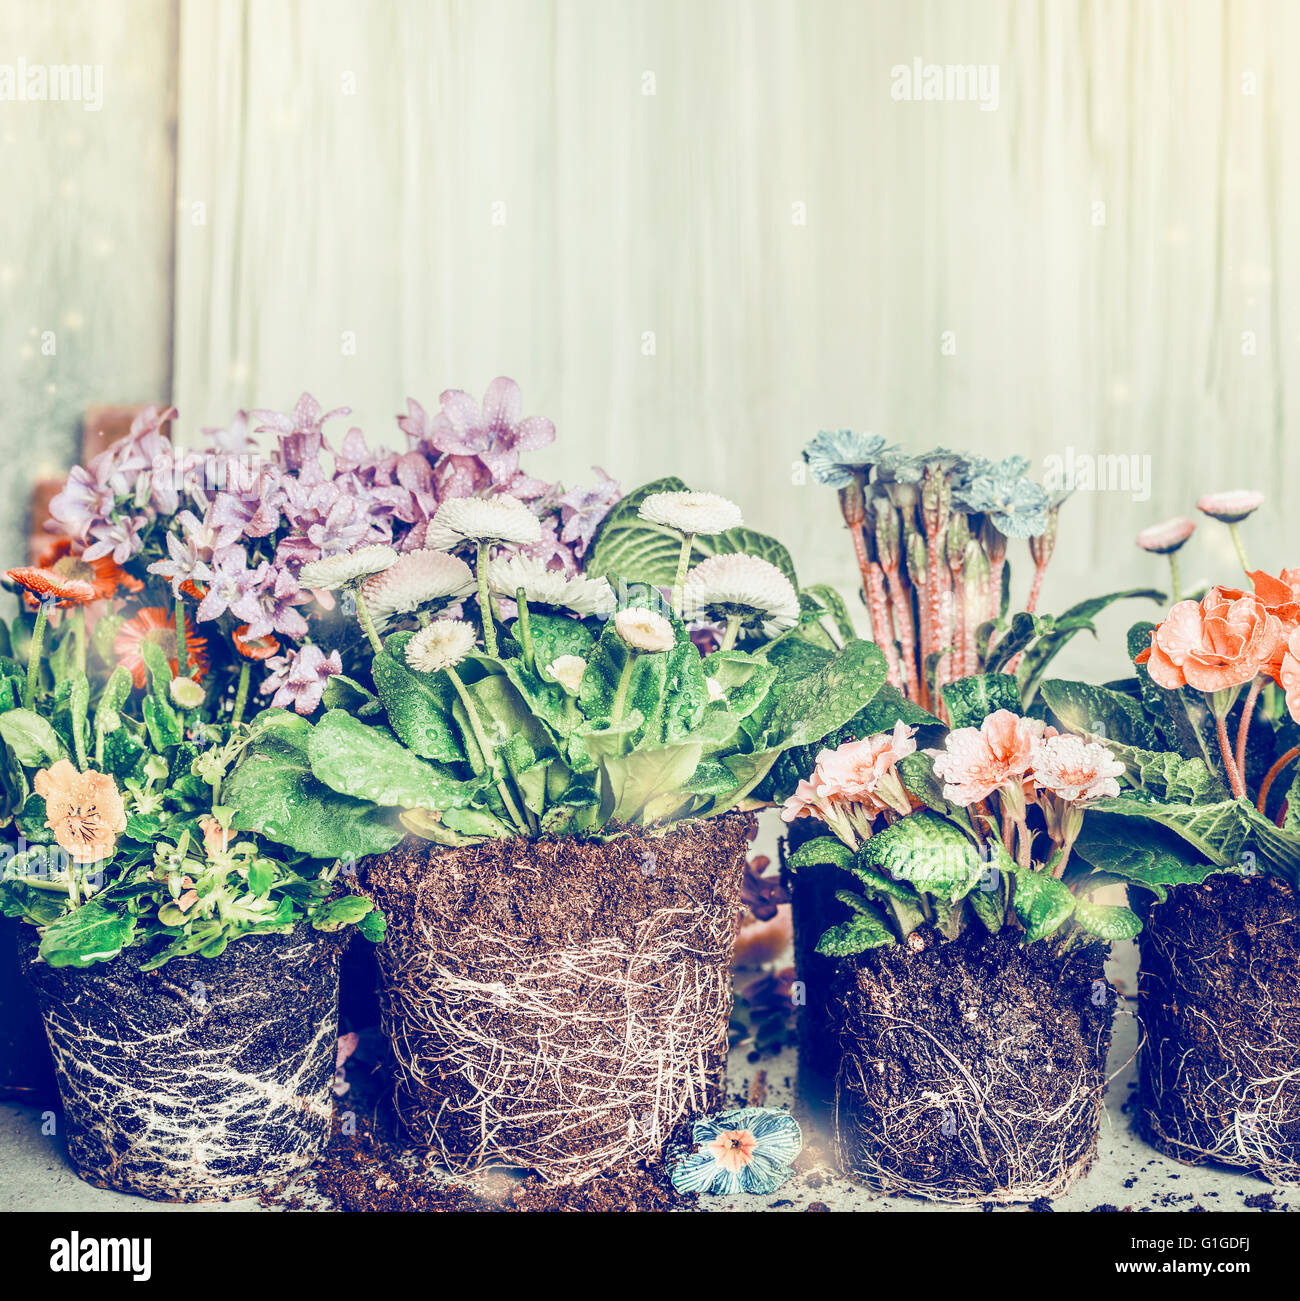 Diverses fleurs pour planter dans le jardin ou des pots, tons rétro Banque D'Images